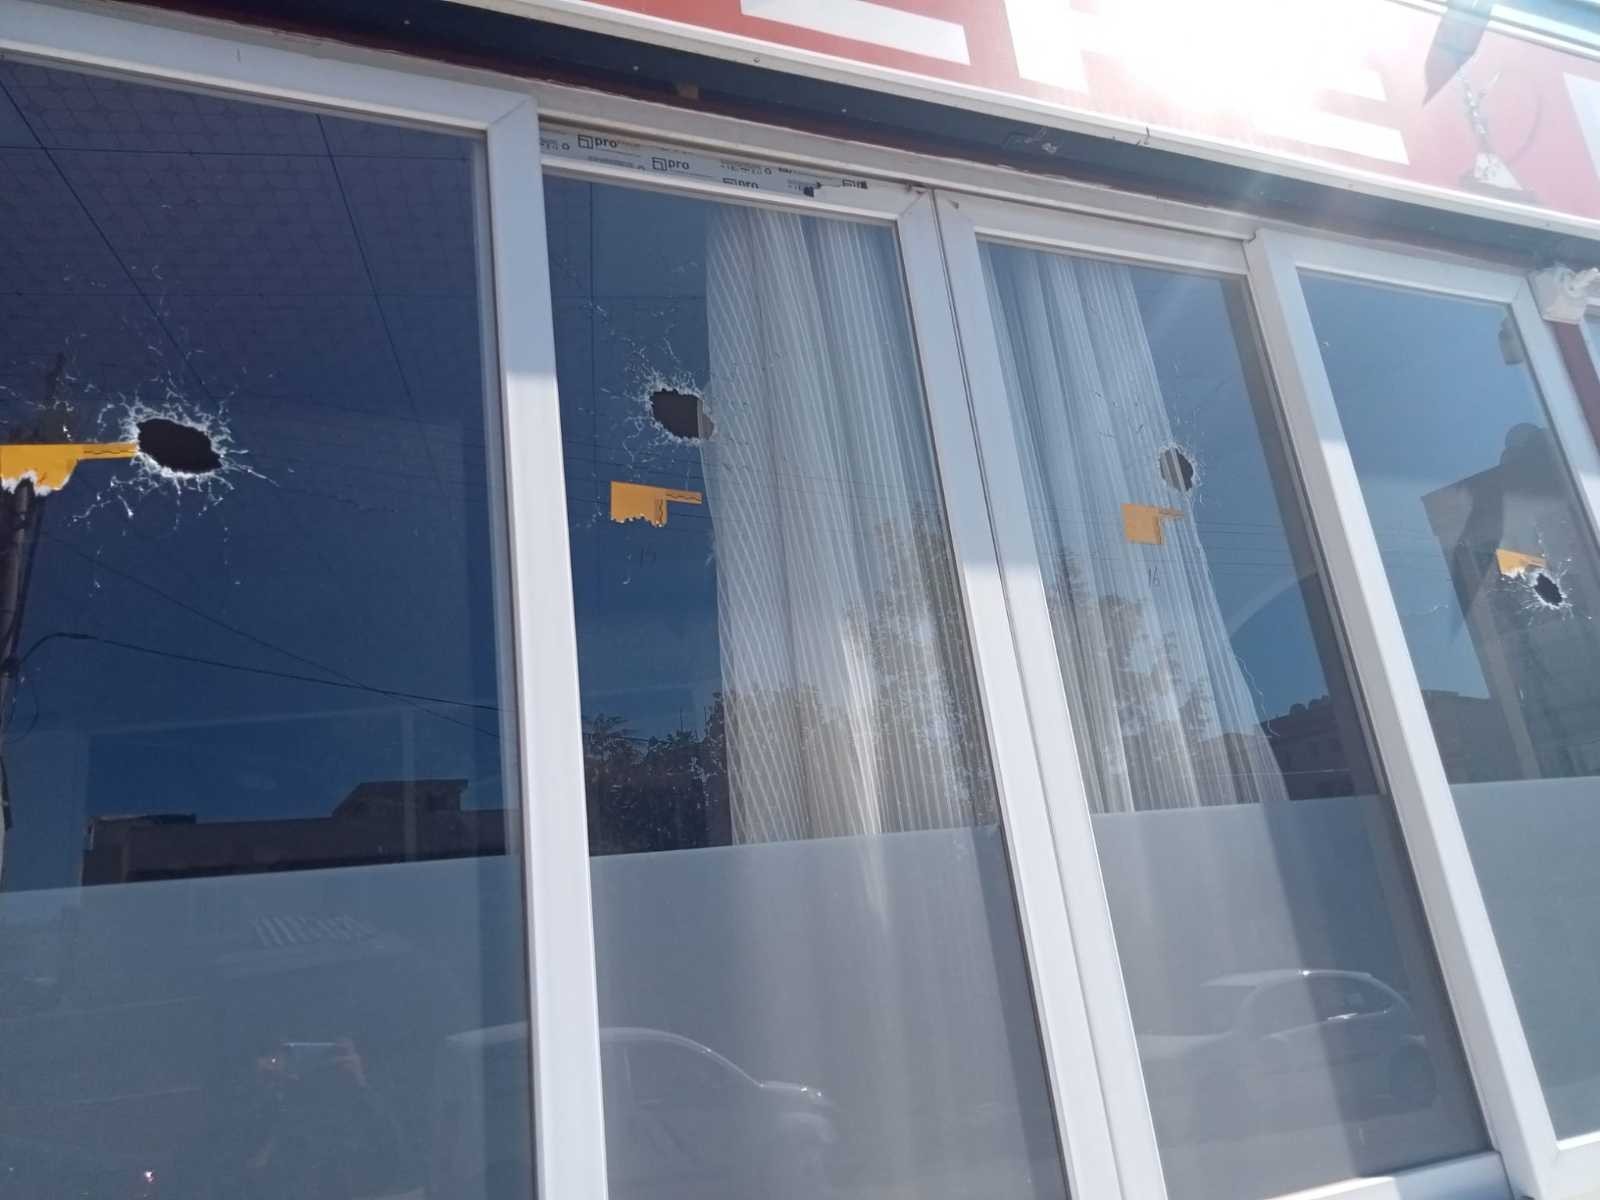 Pompalı tüfekle kafeye ateş açtı #izmir